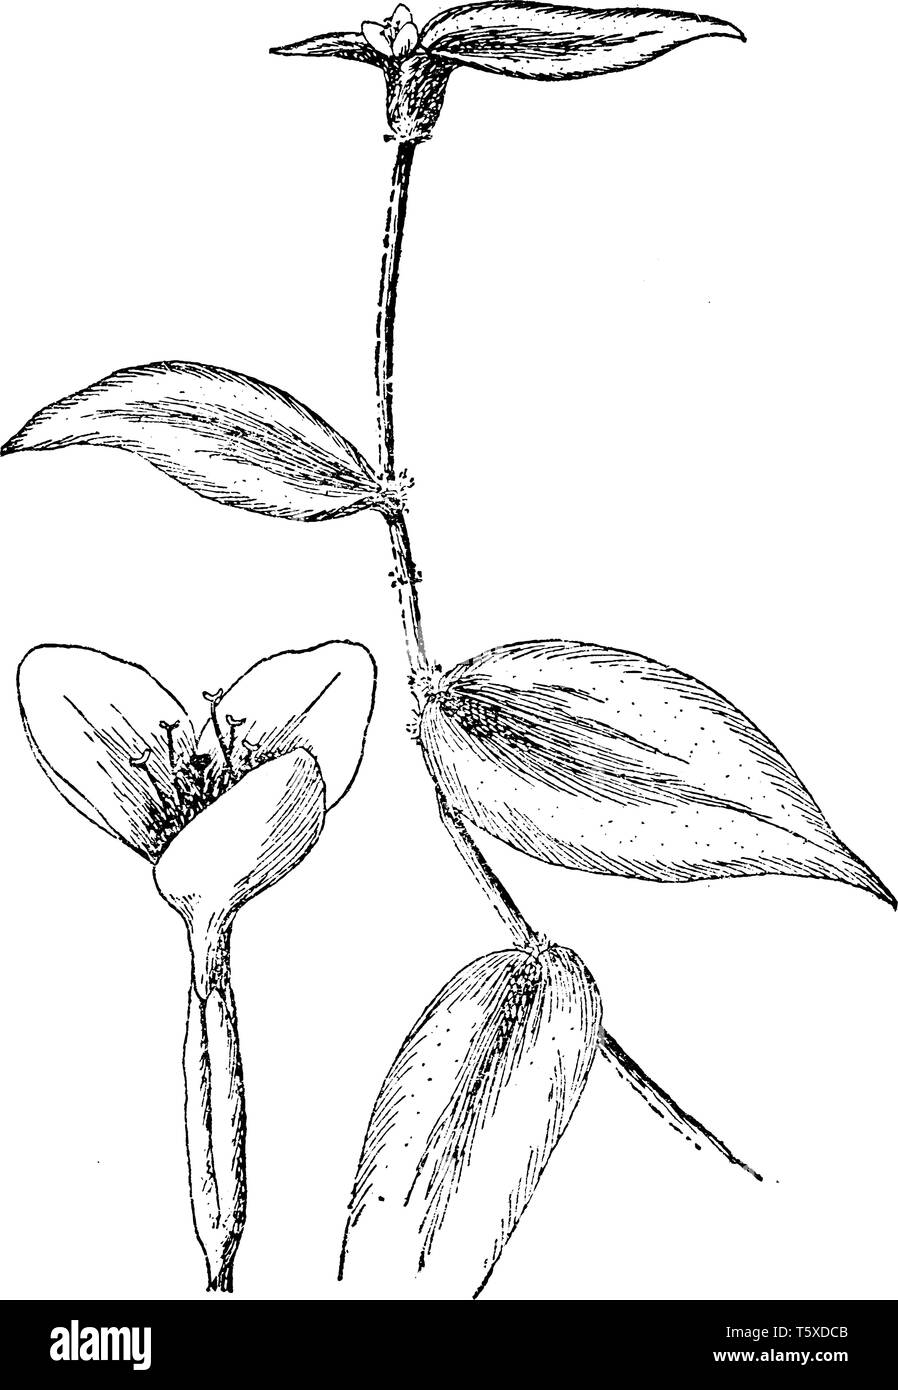 Zebrina pendula est une espèce de tradescantie de l'ouest connue sous le nom de plante ou d'un pouce juif errant. Tradescantia zebrina à motifs zébrés attrayant a quitter Illustration de Vecteur